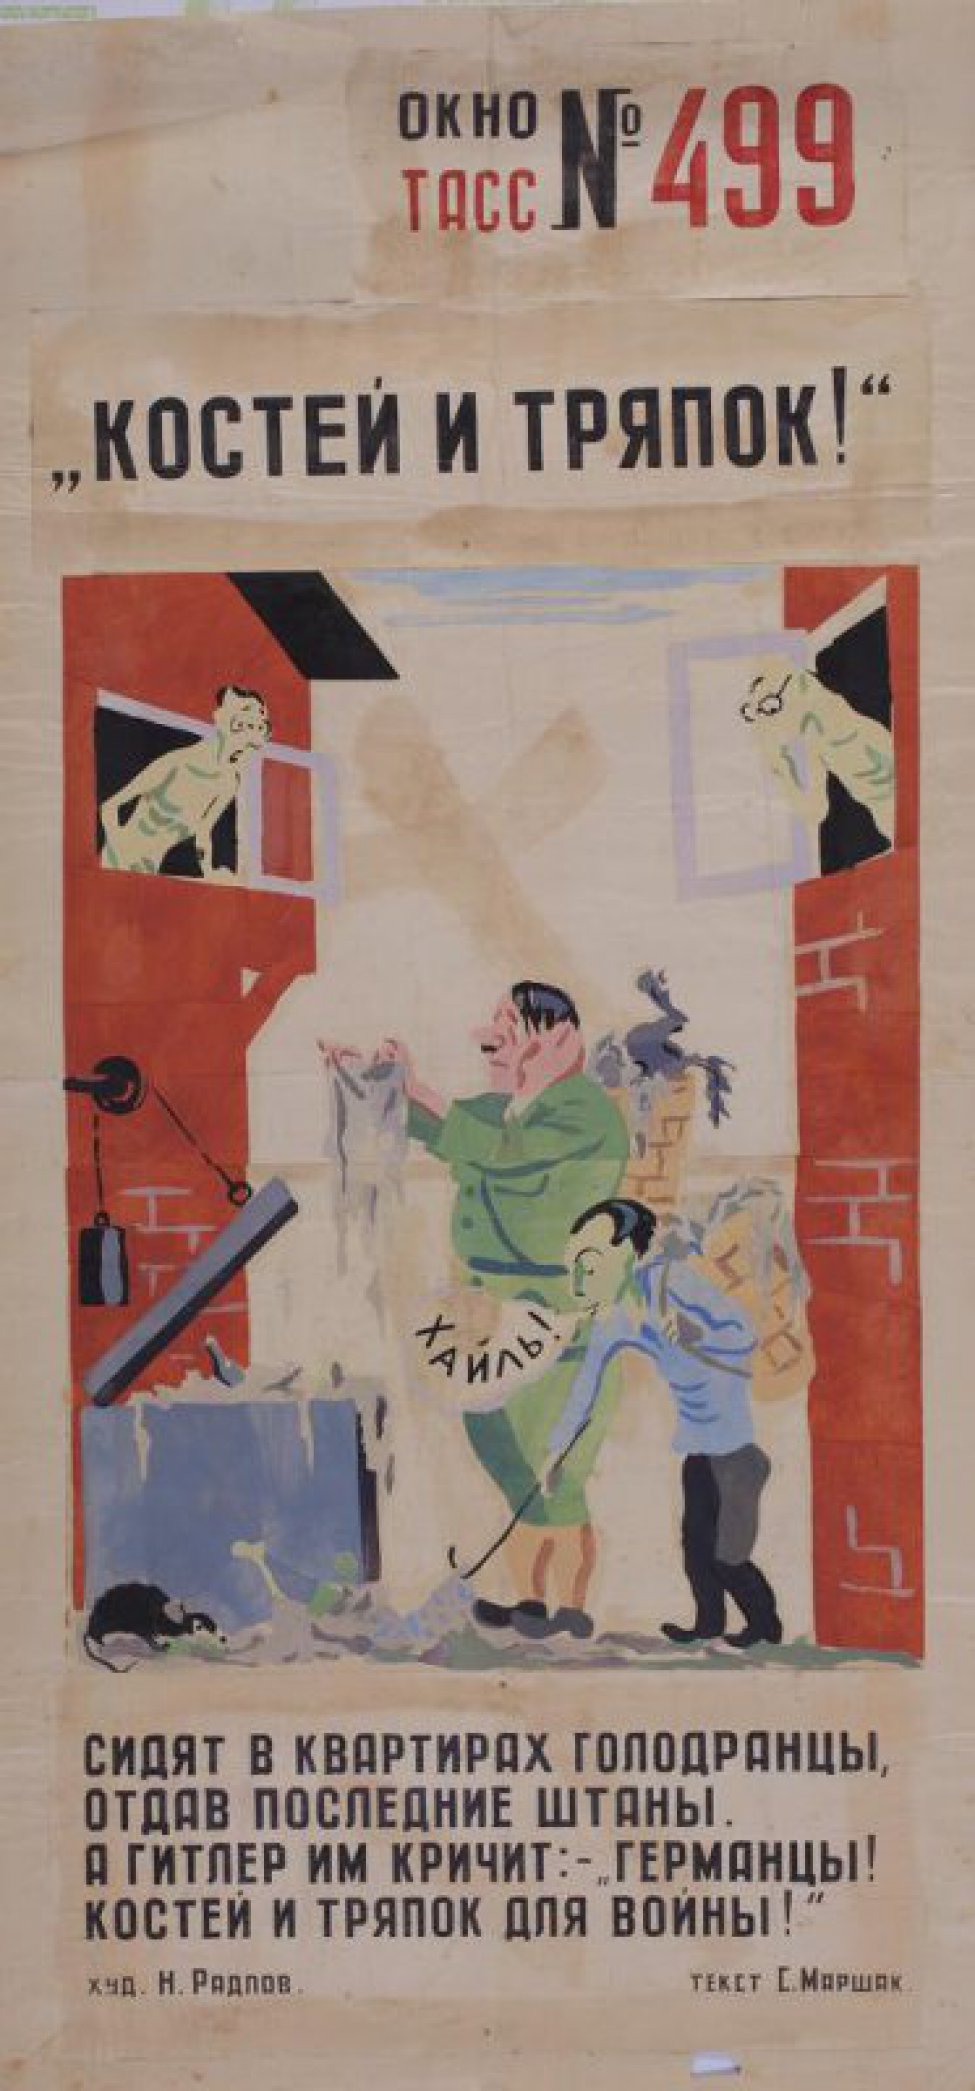 Рисунок изображает Гитлера иГеббельса с мешками за спиной у мусорного ящика. По сторонам из окон домов выглядывают обнаженные люди, текст: " Сидят в квартирах  голодранцы, отдав последние штаны..."